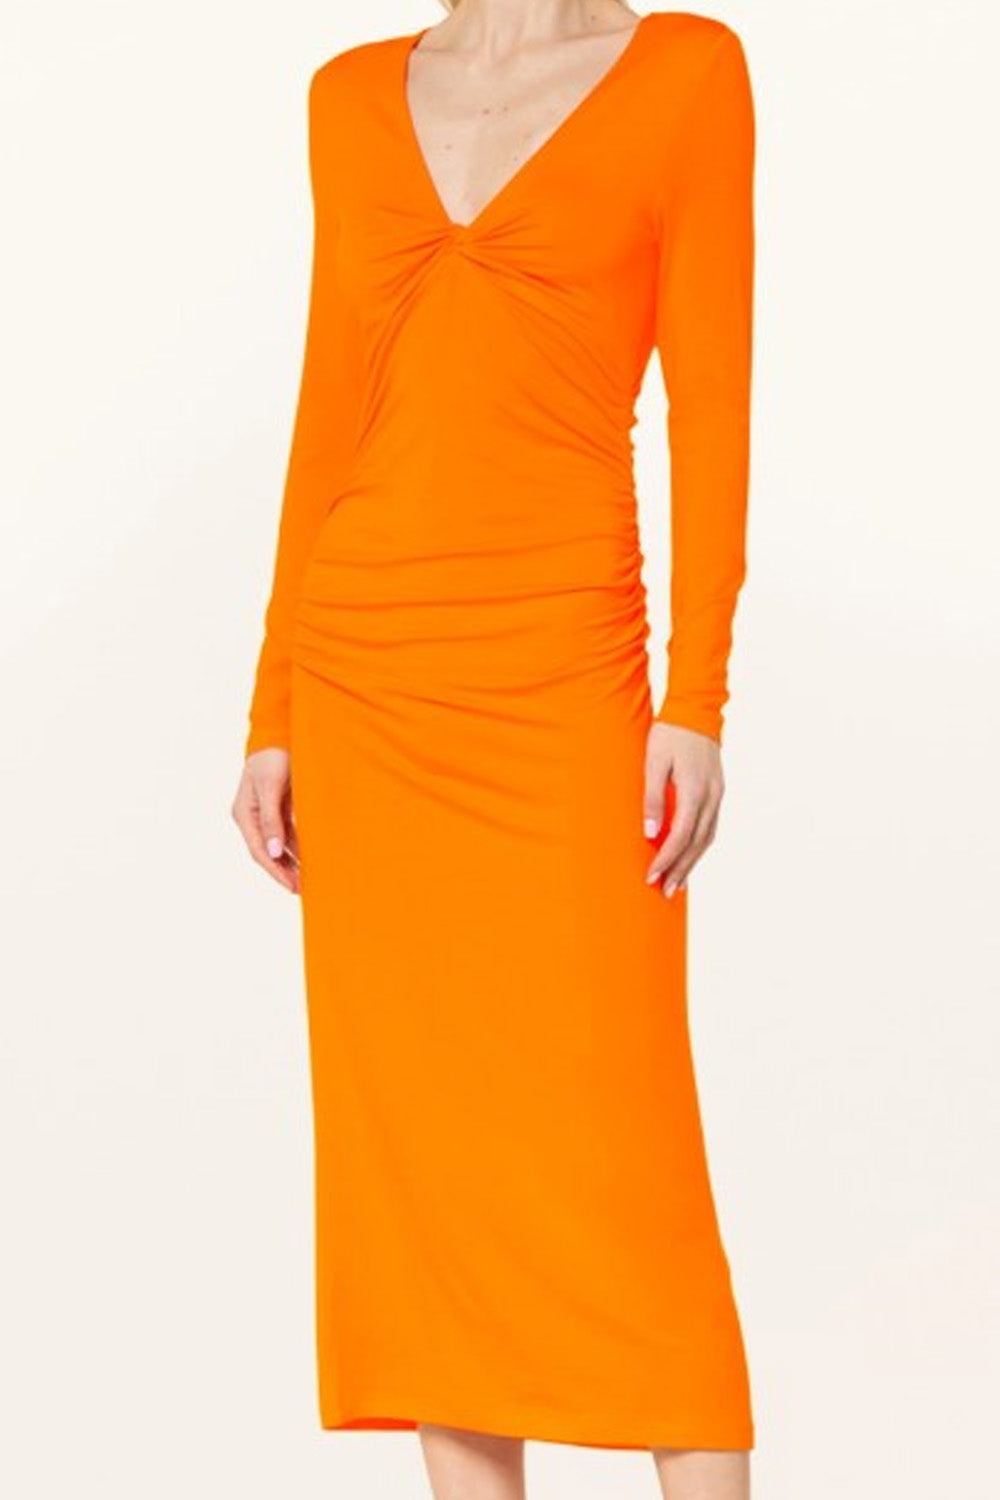 Open Air Orange Dress